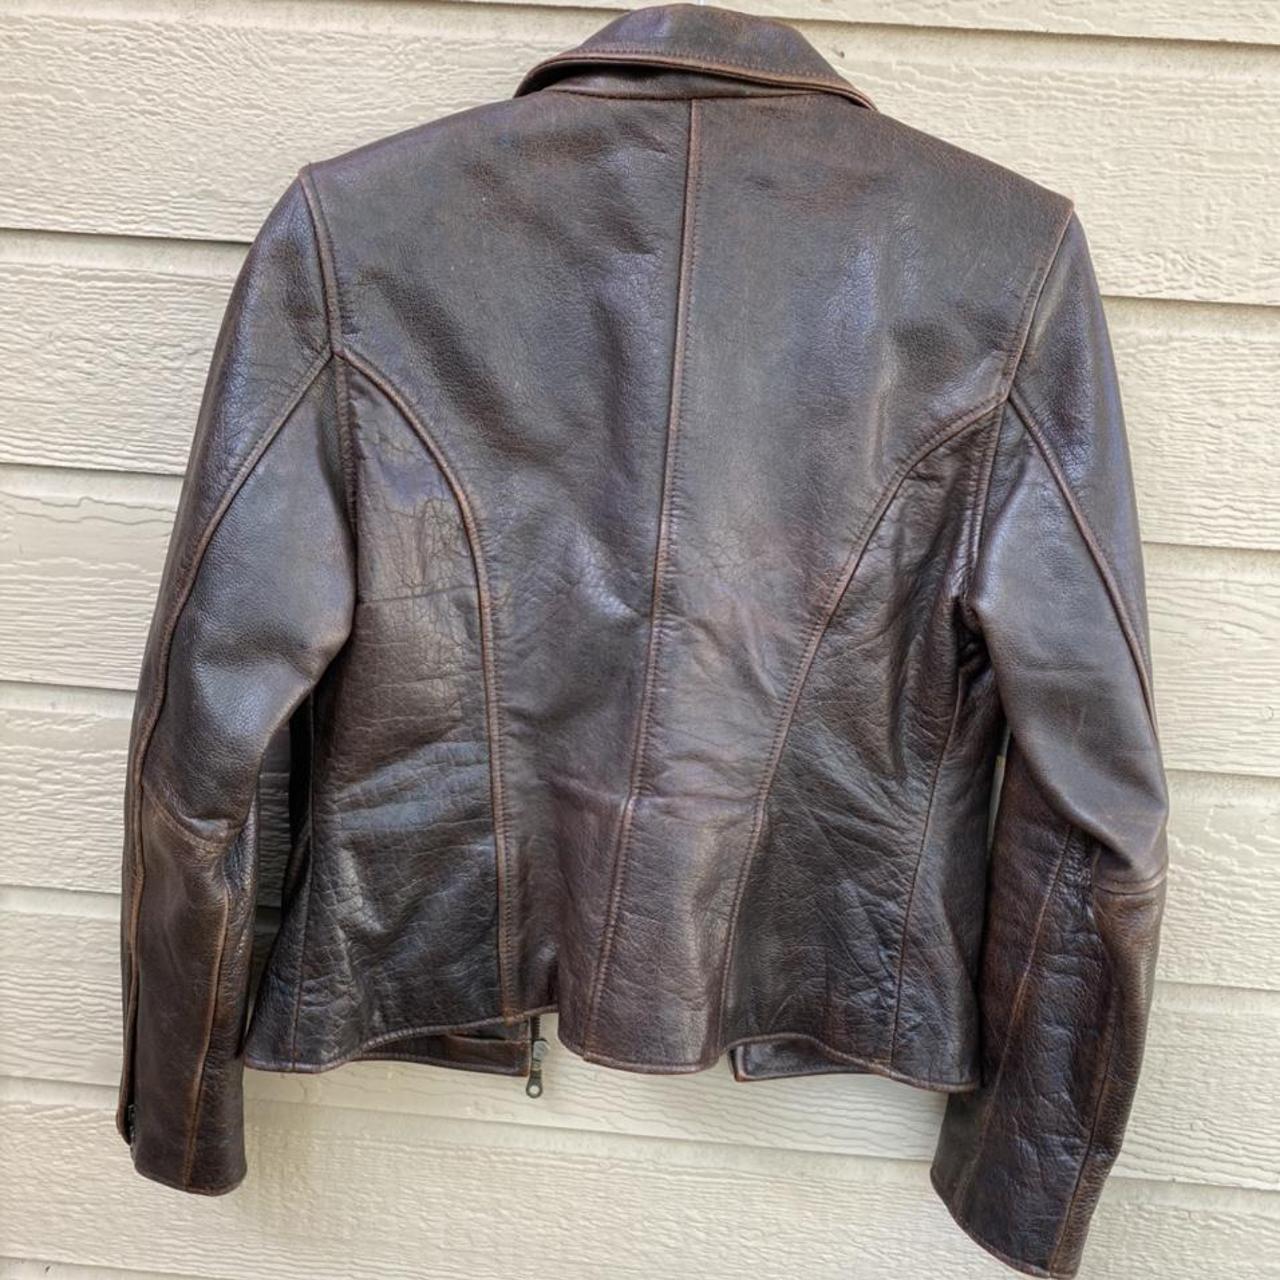 Vintage Oakwood classic brown leather jacket. In... - Depop